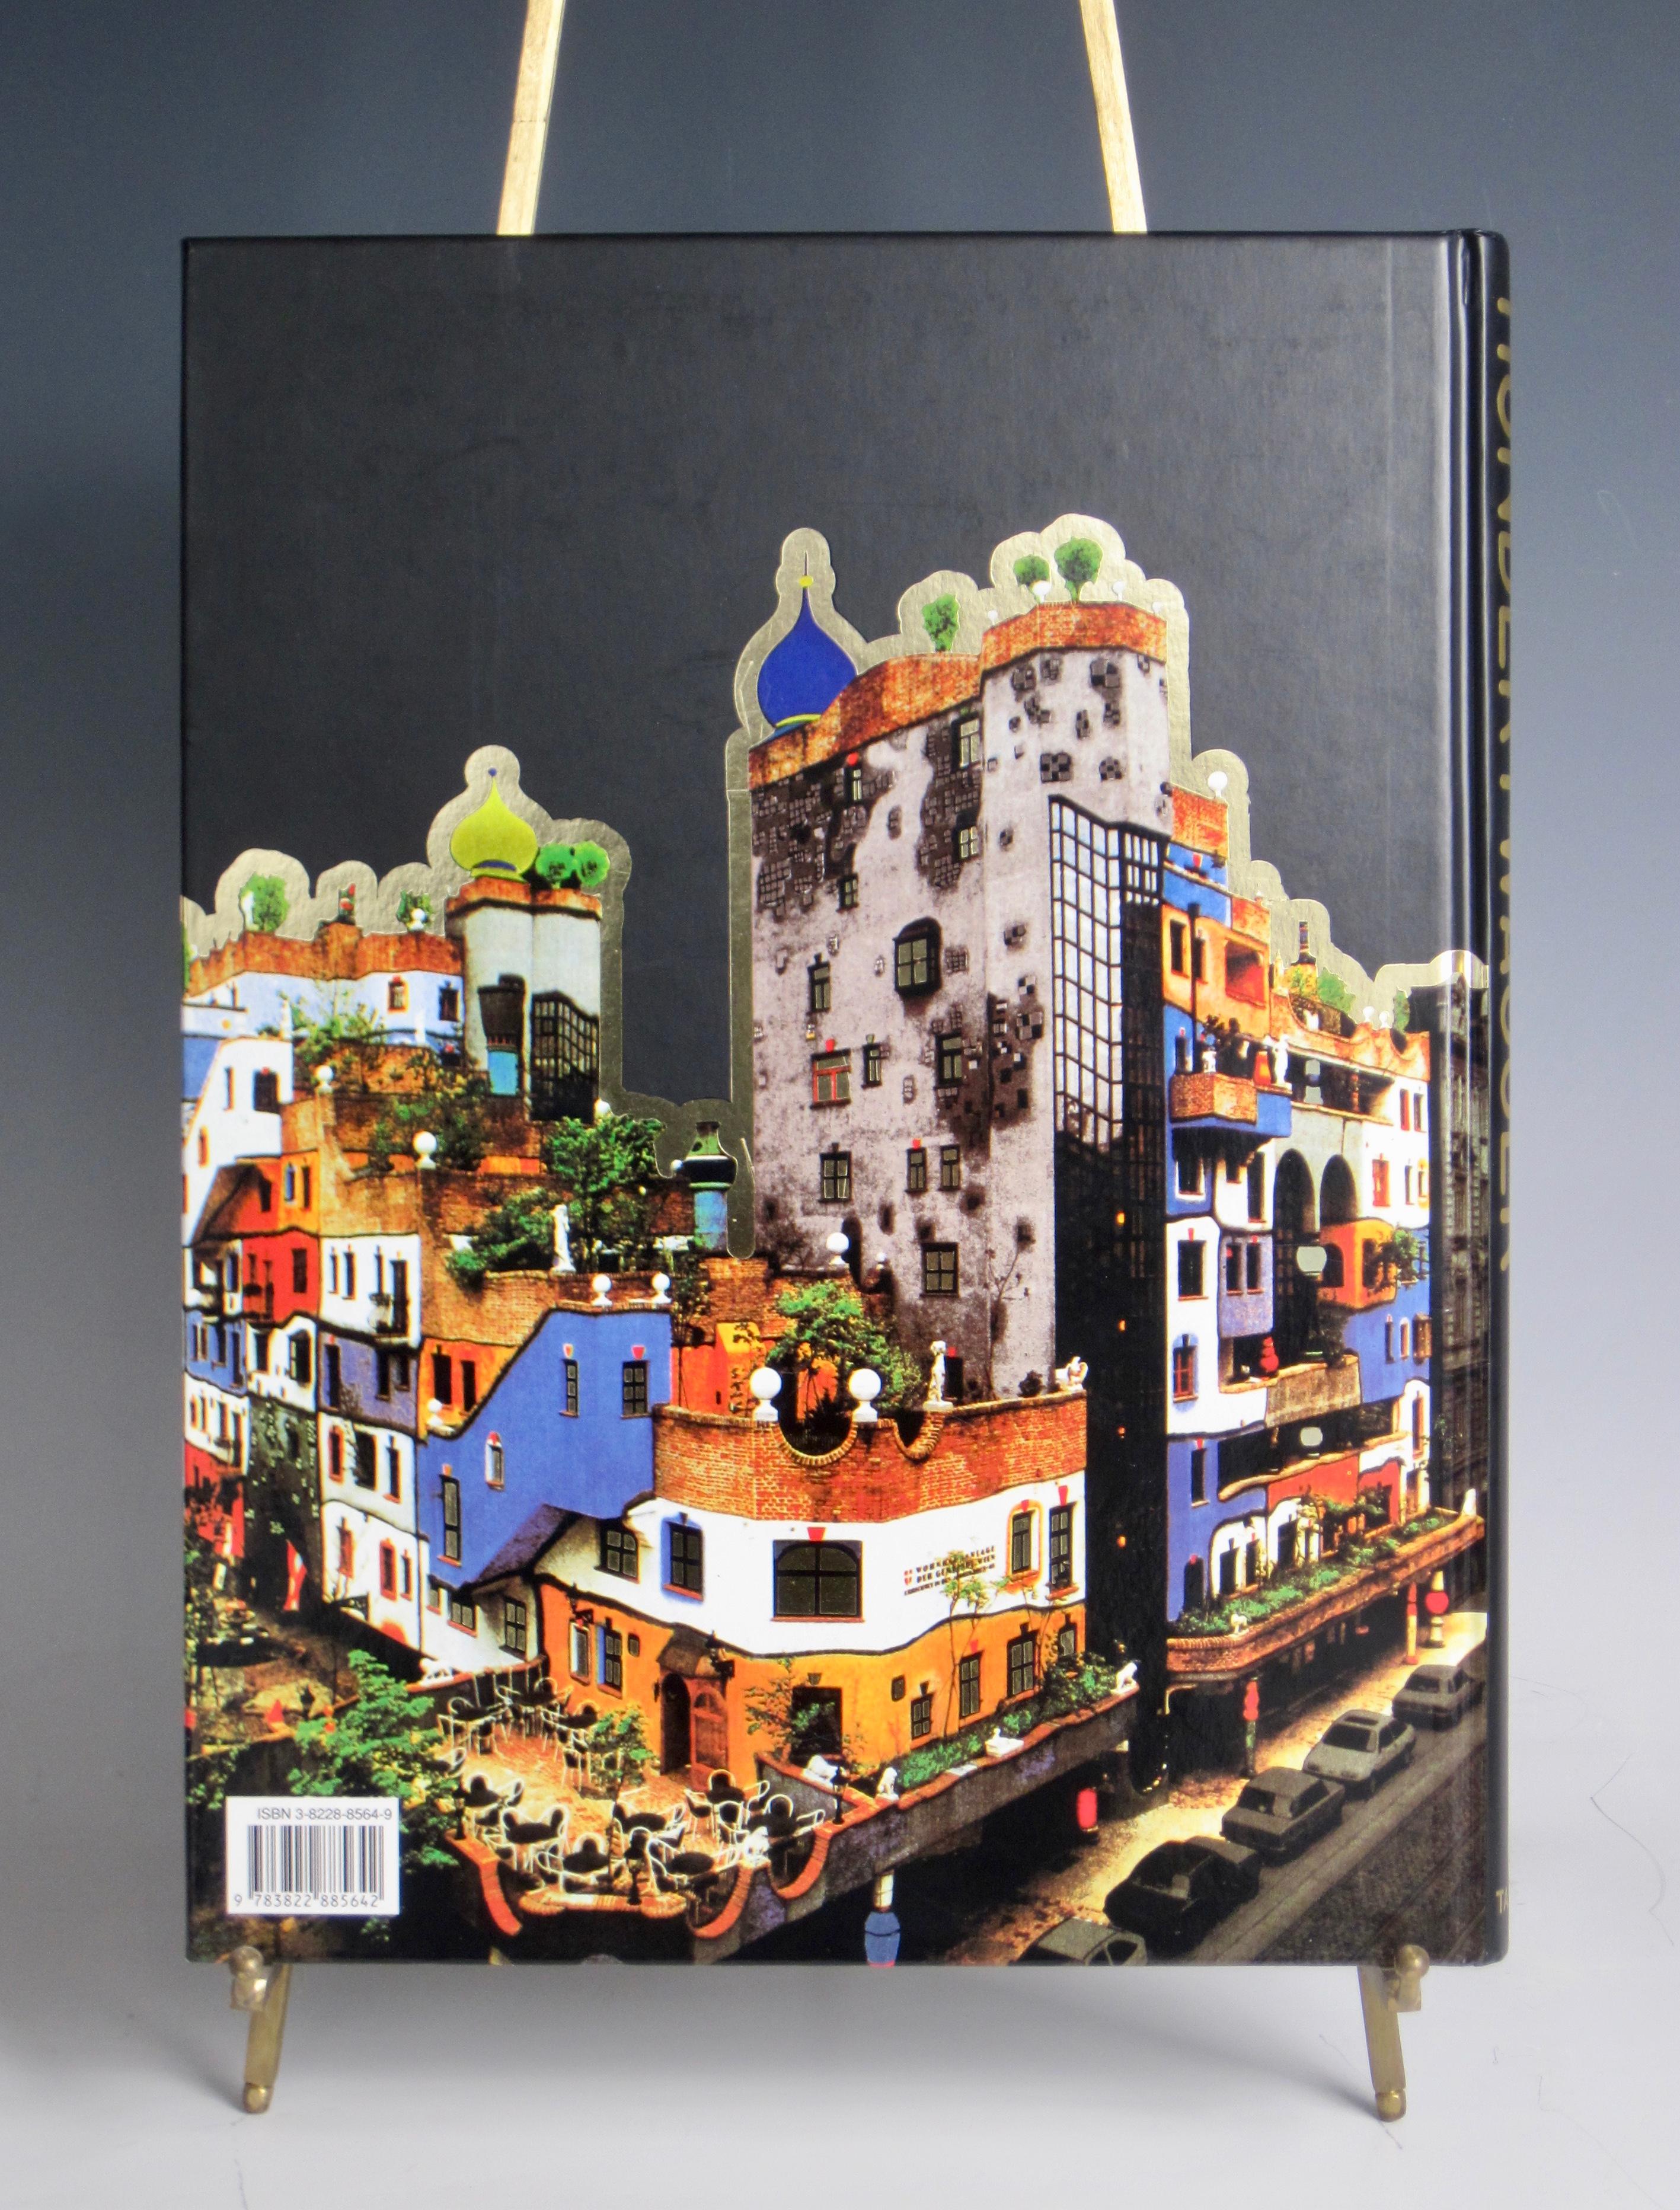 Modern Taschen Hundertwasser Architecture Hardcover Coffee Table Book